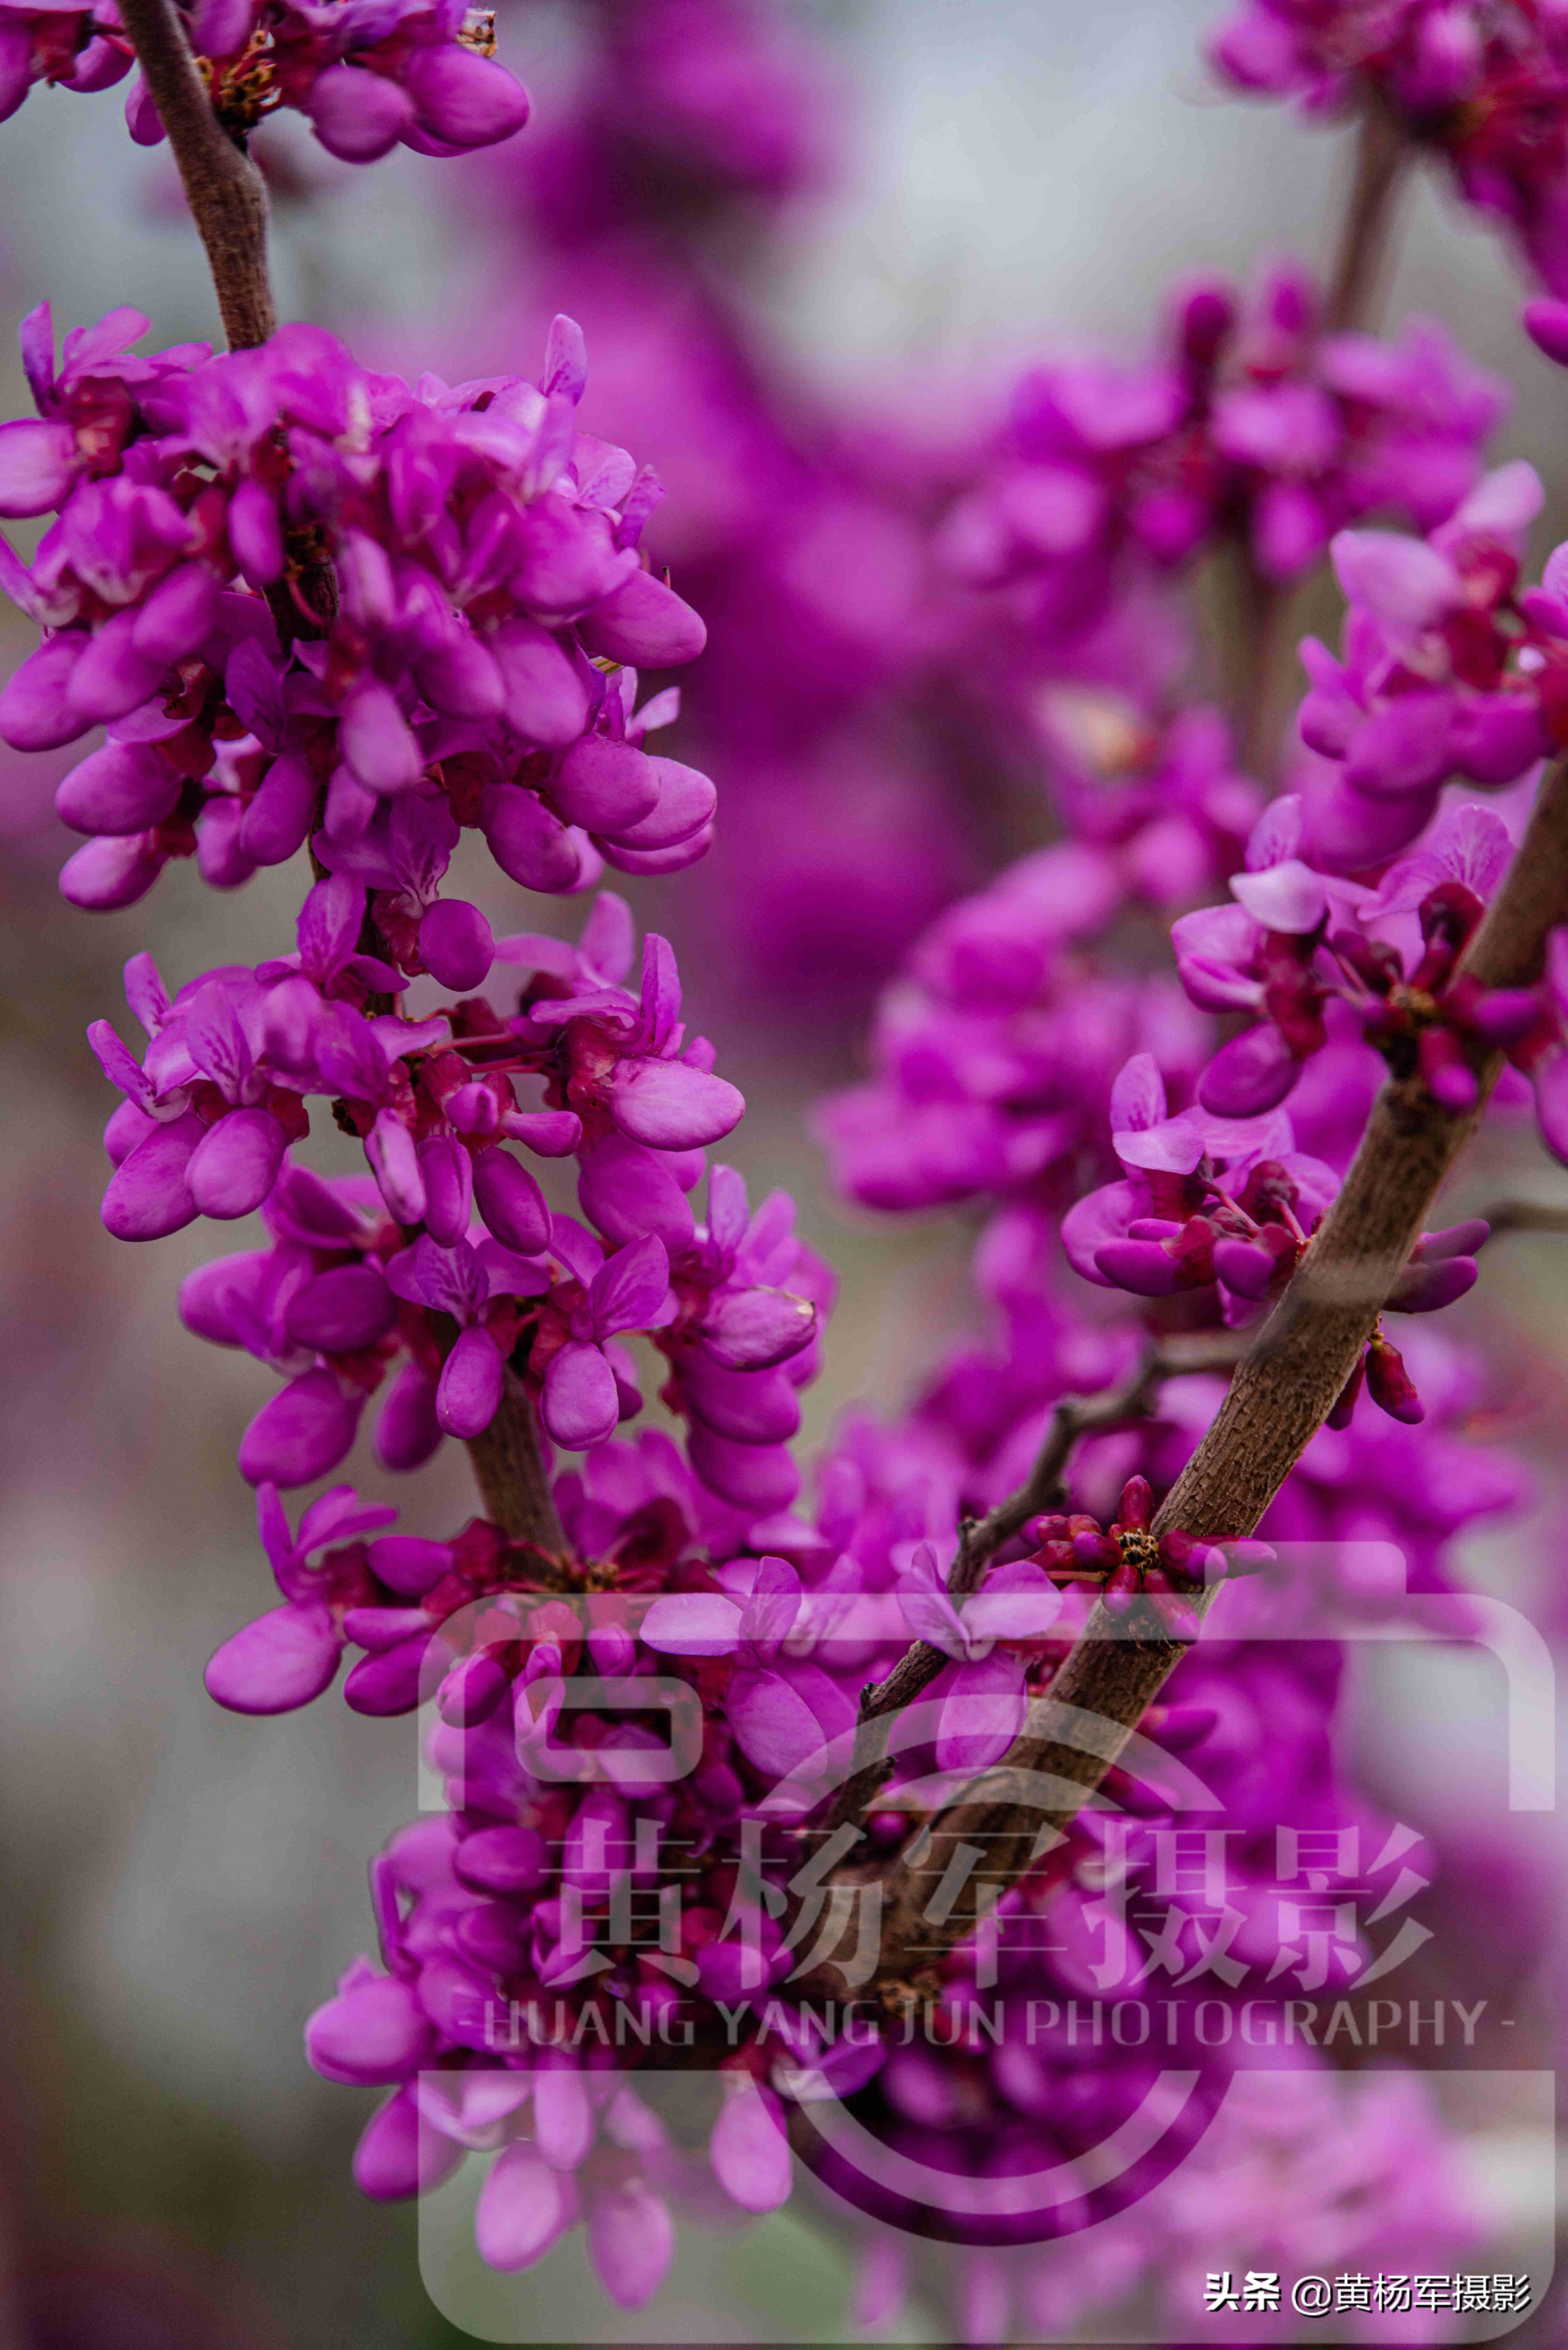 春天里娇艳盛开的紫荆花,娇小的花朵别致的美,紫红色妩媚的花卉